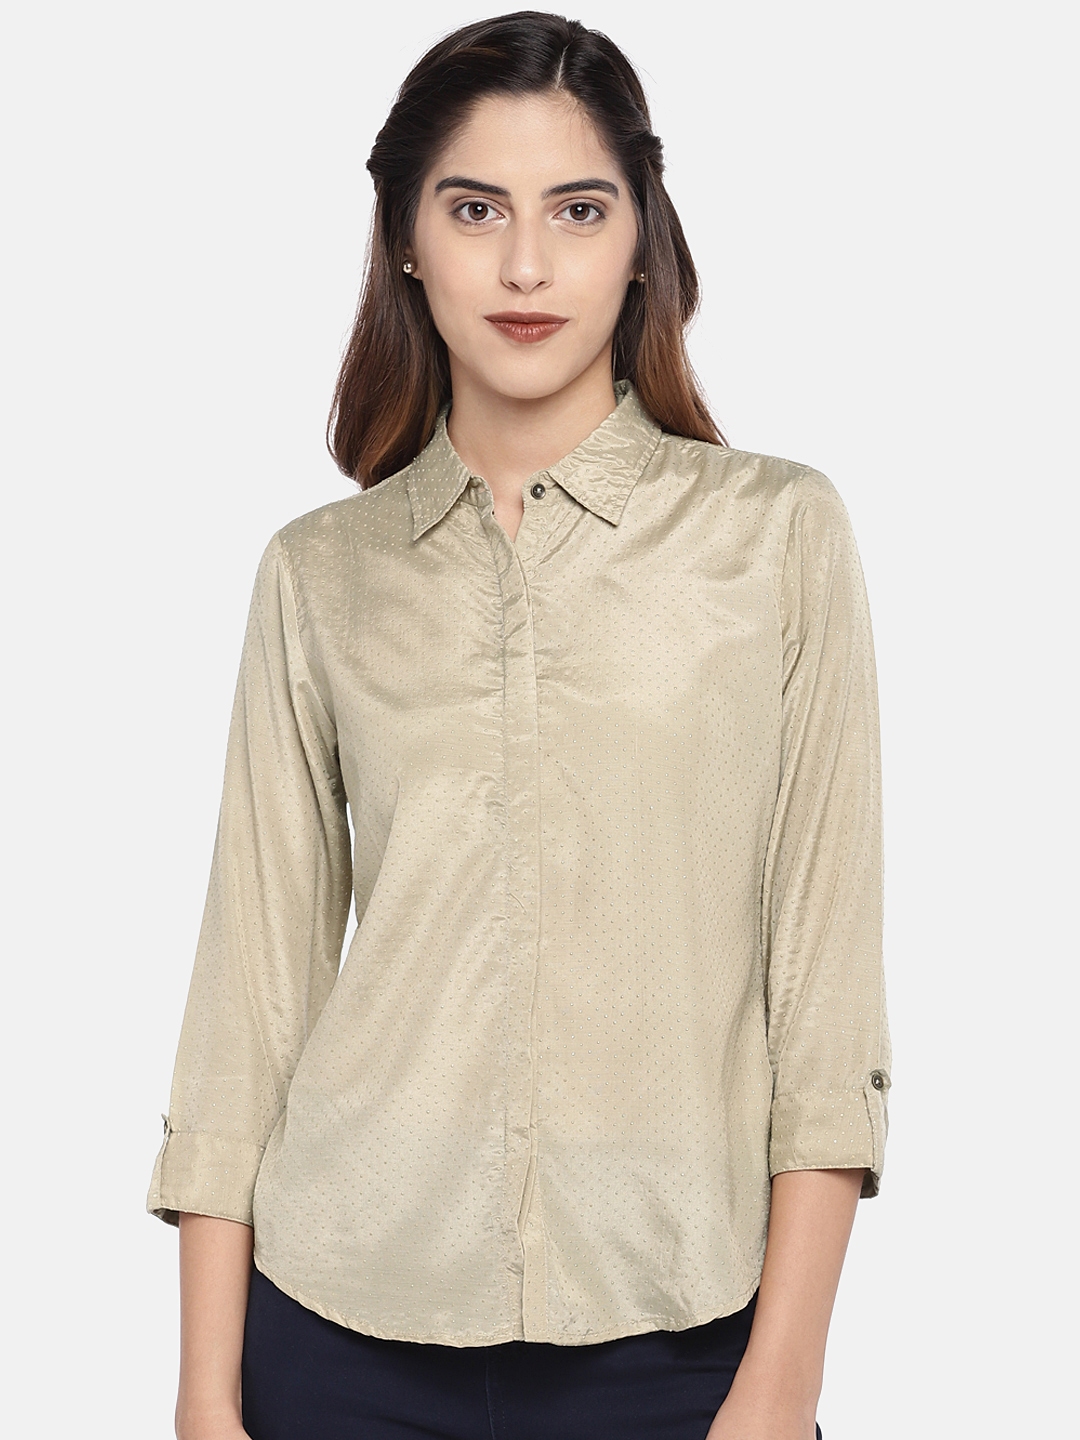 Buy Ethnicity Women Beige Solid Shirt Style Top - Tops for Women ...